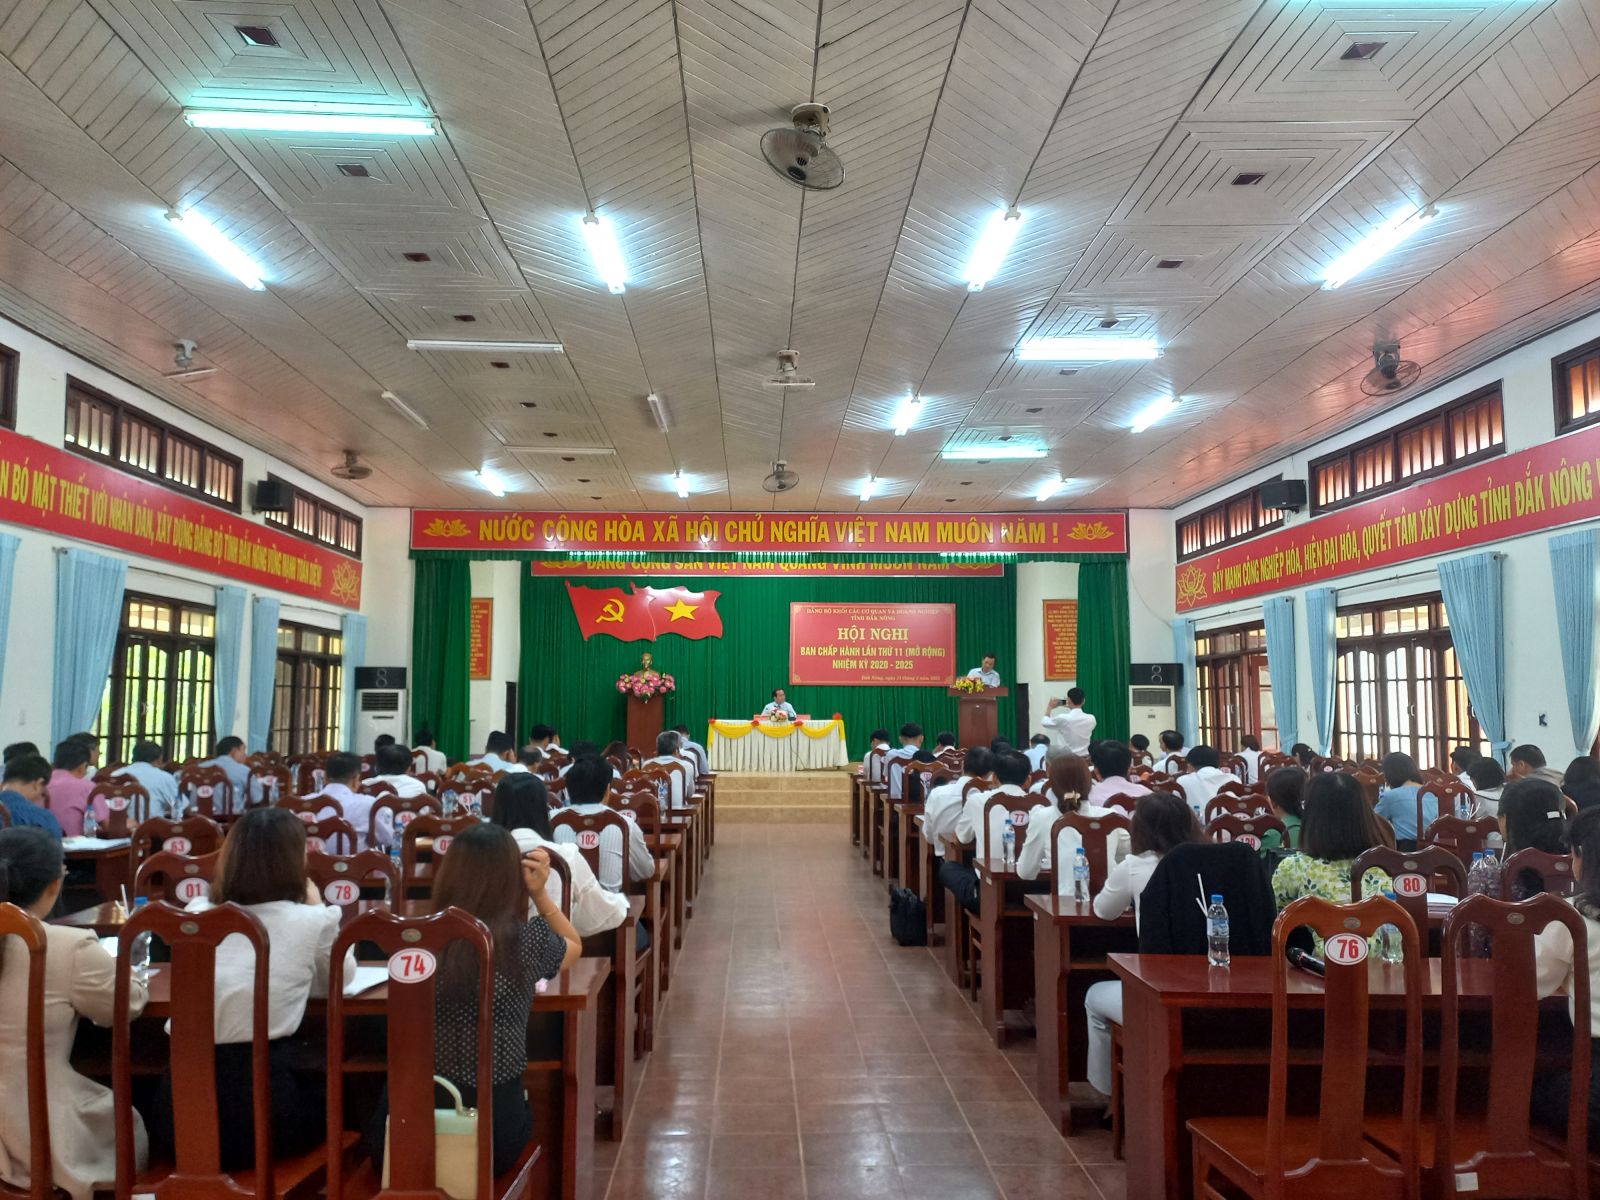 Hội nghị Ban Chấp hành Đảng bộ Khối các cơ quan và doanh nghiệp tỉnh Đắk Nông (mở rộng) lần thứ 11, nhiệm kỳ 2020 - 2025